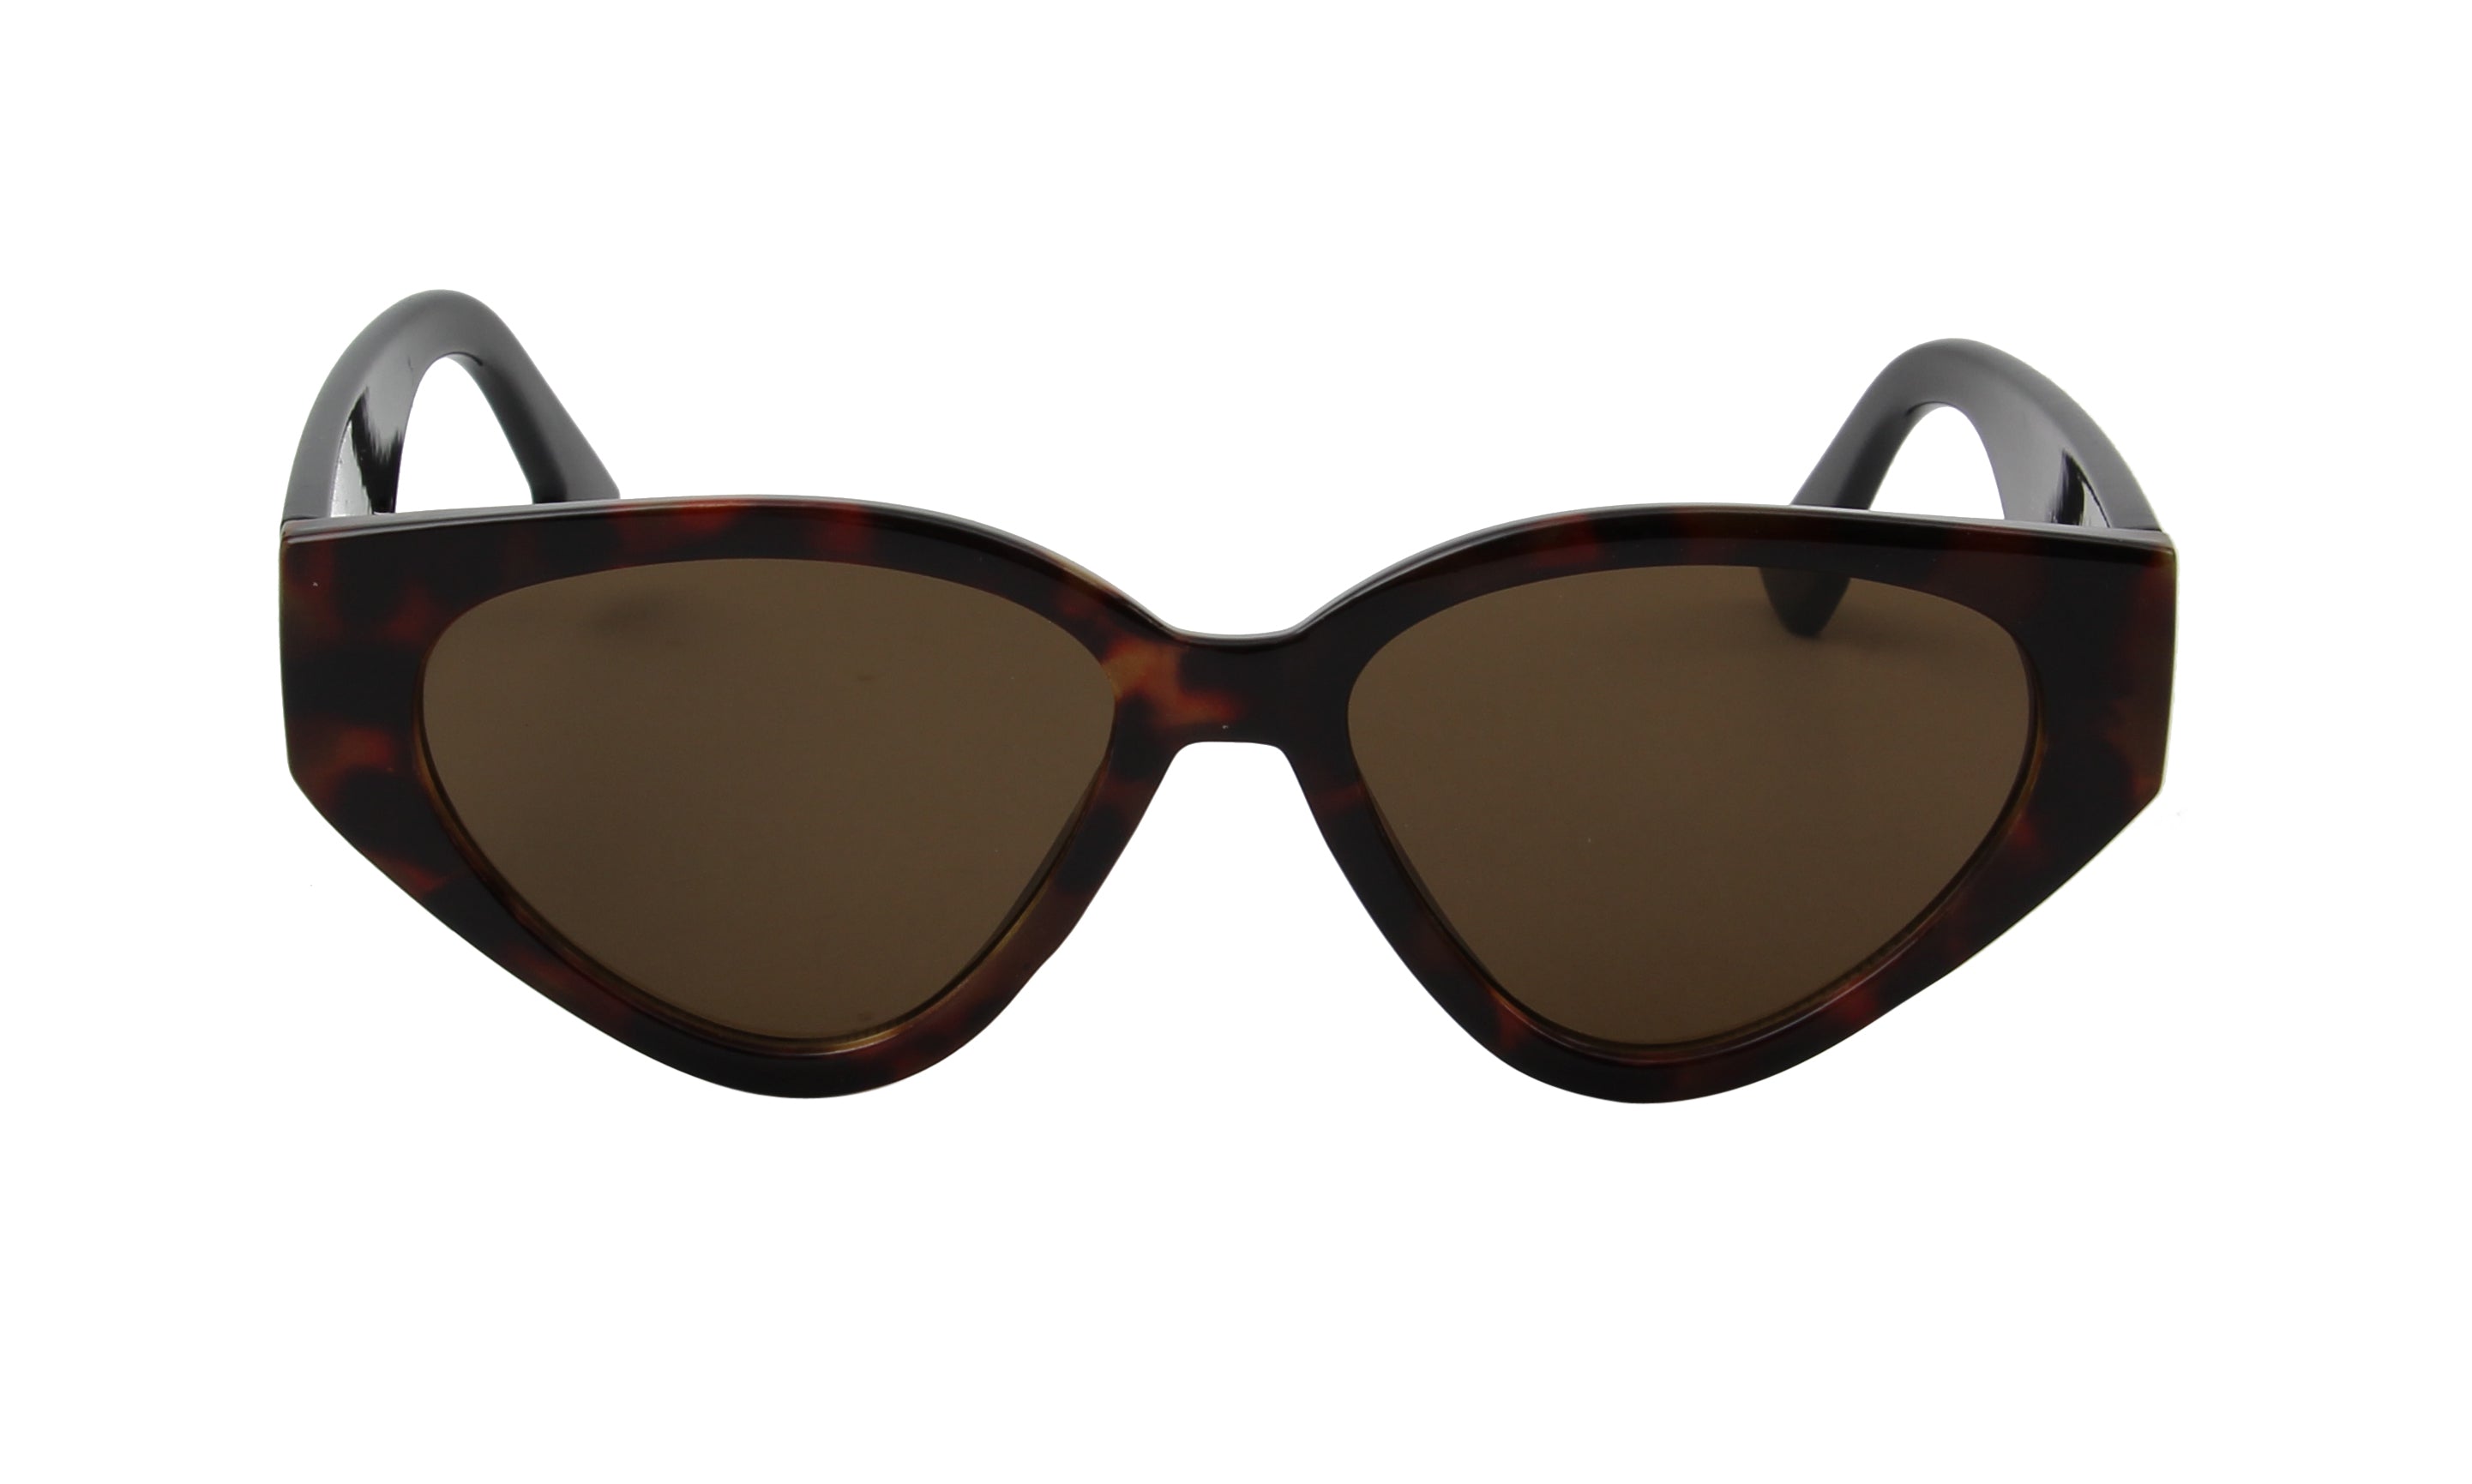 S1145 - Women Round Cat Eye Fashion Sunglasses - Iris Fashion Inc. | Wholesale Sunglasses and Glasses